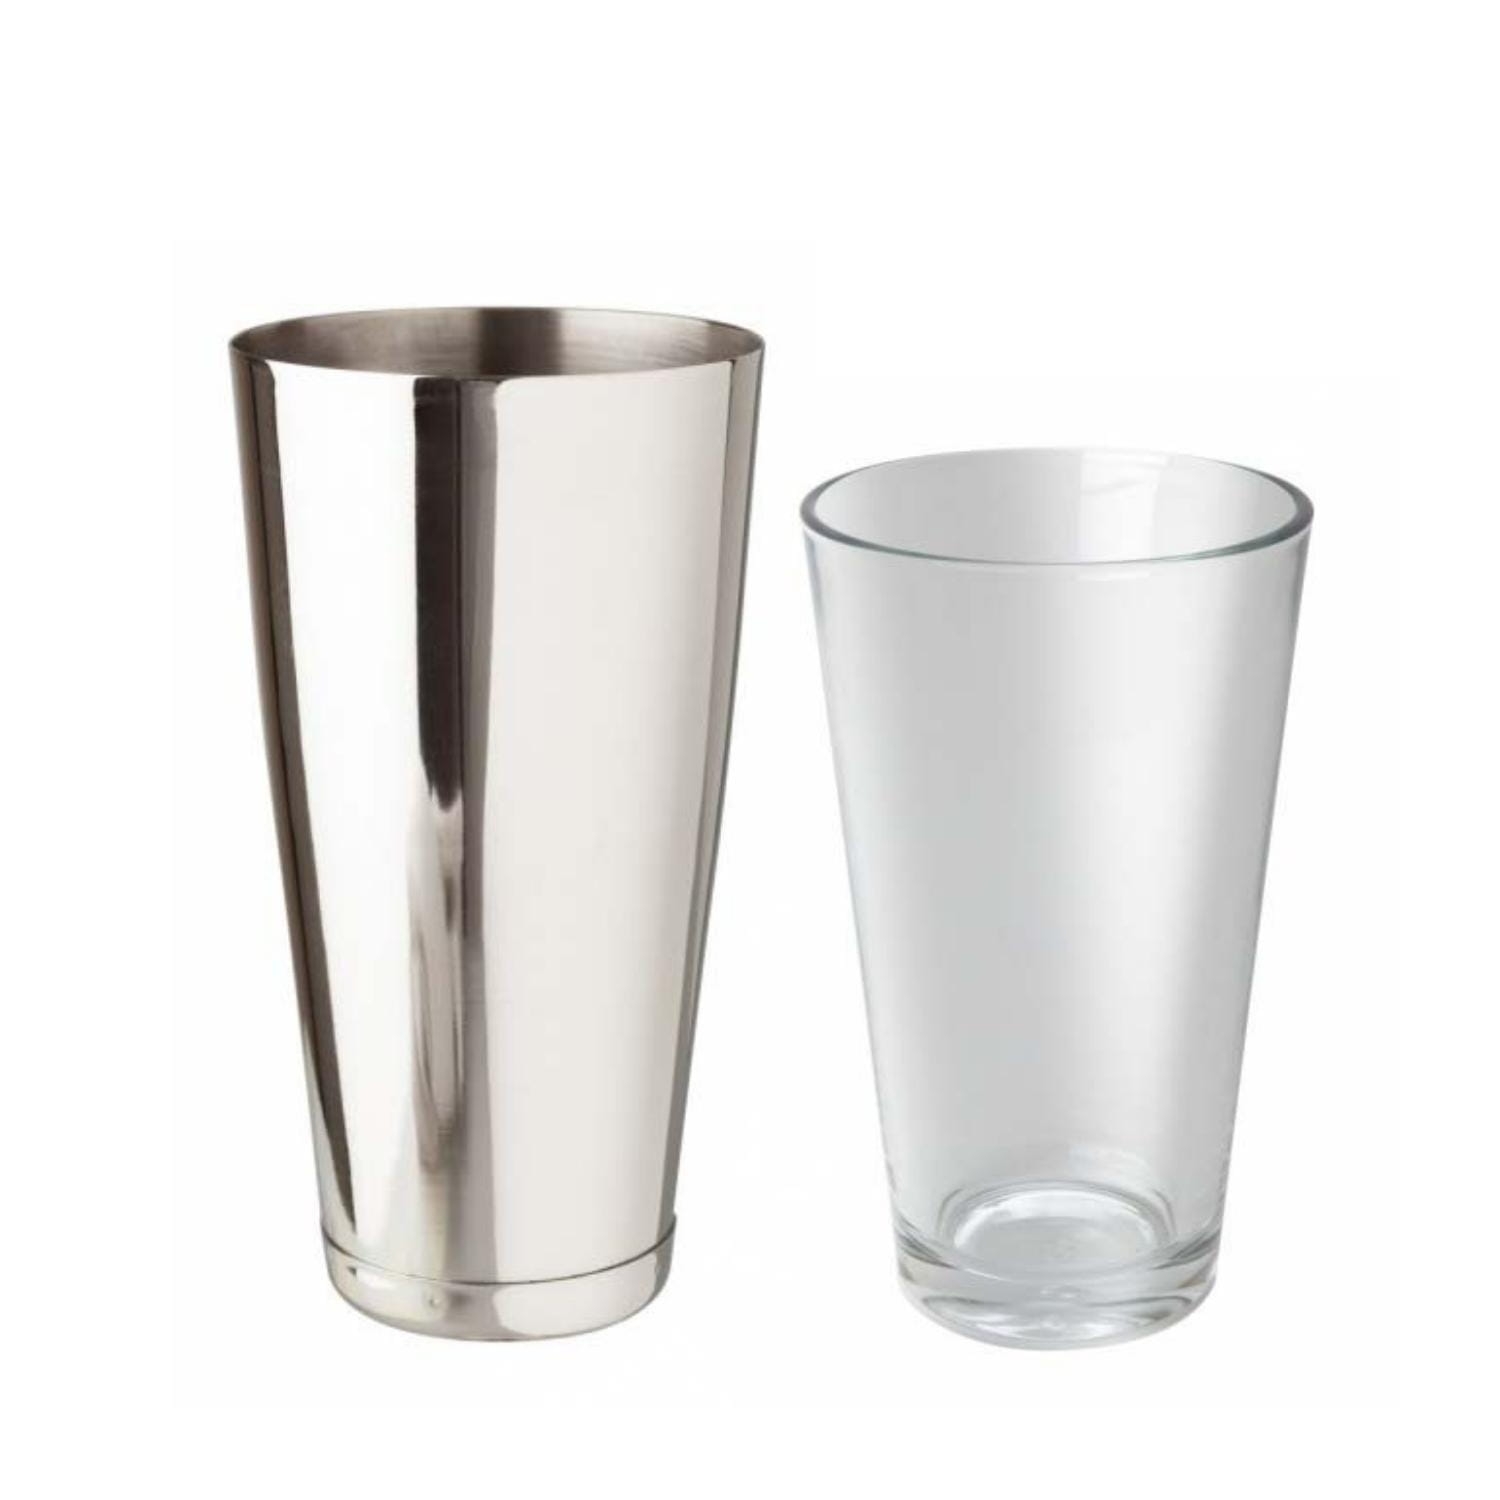 Image of Shaker do drinków bostoński kubek i szklanica 840 i 470 ml